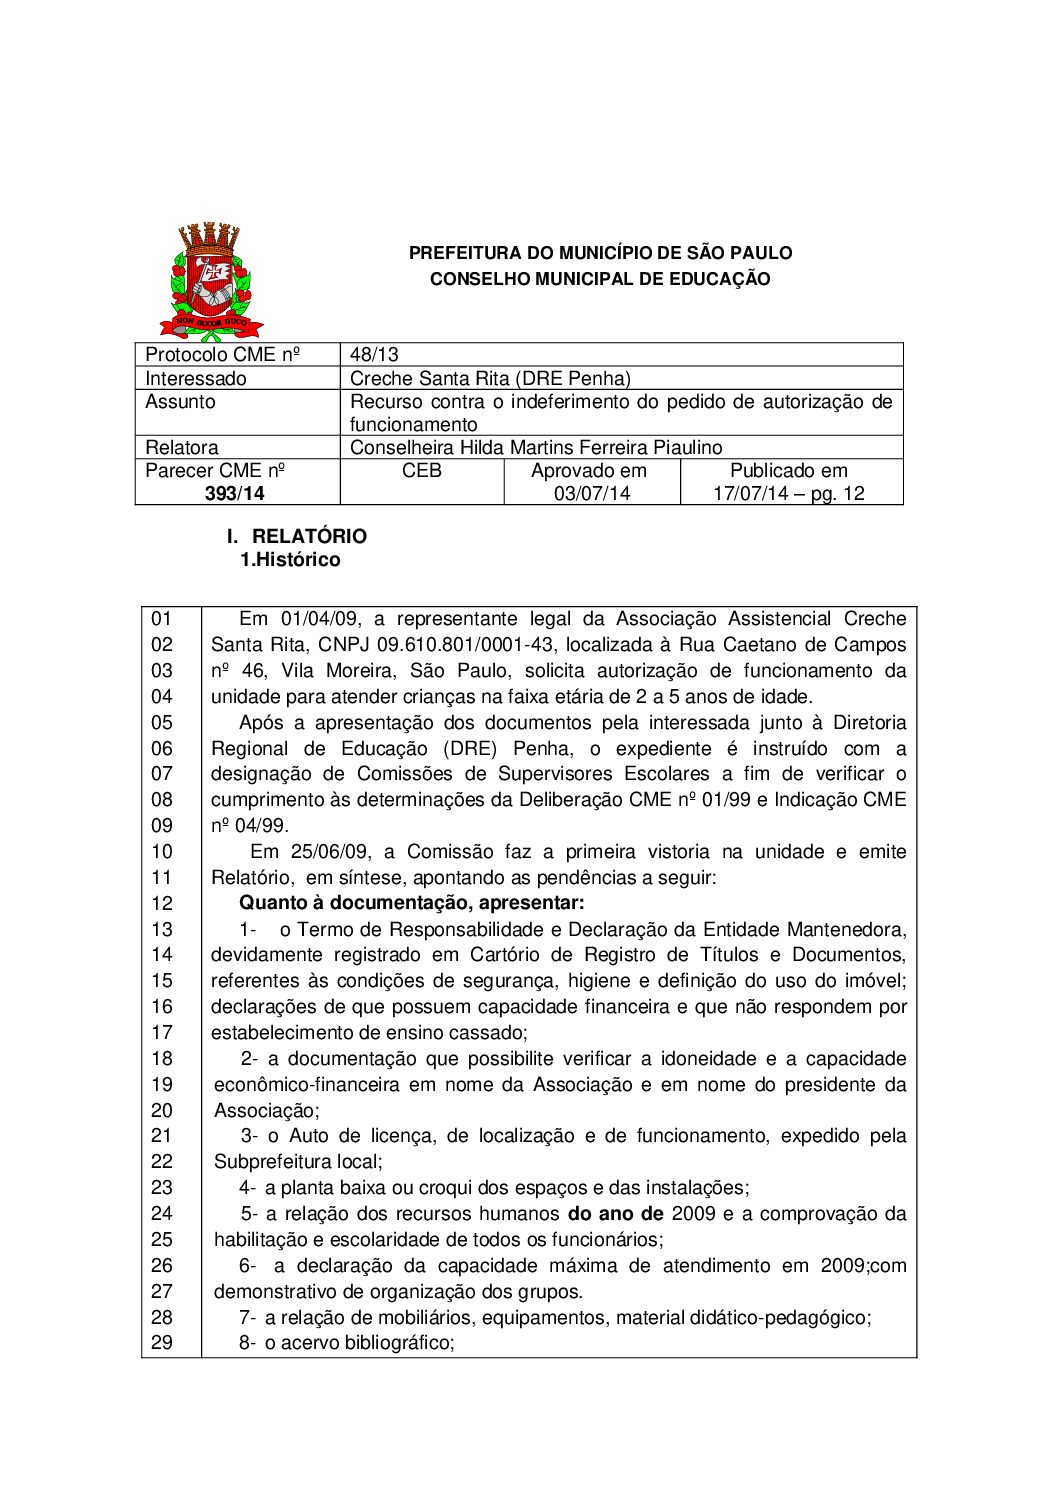 Parecer CME nº 393/2014 - Creche Santa Rita (DRE Penha) - Recurso contra o indeferimento do pedido de autorização de funcionamento 